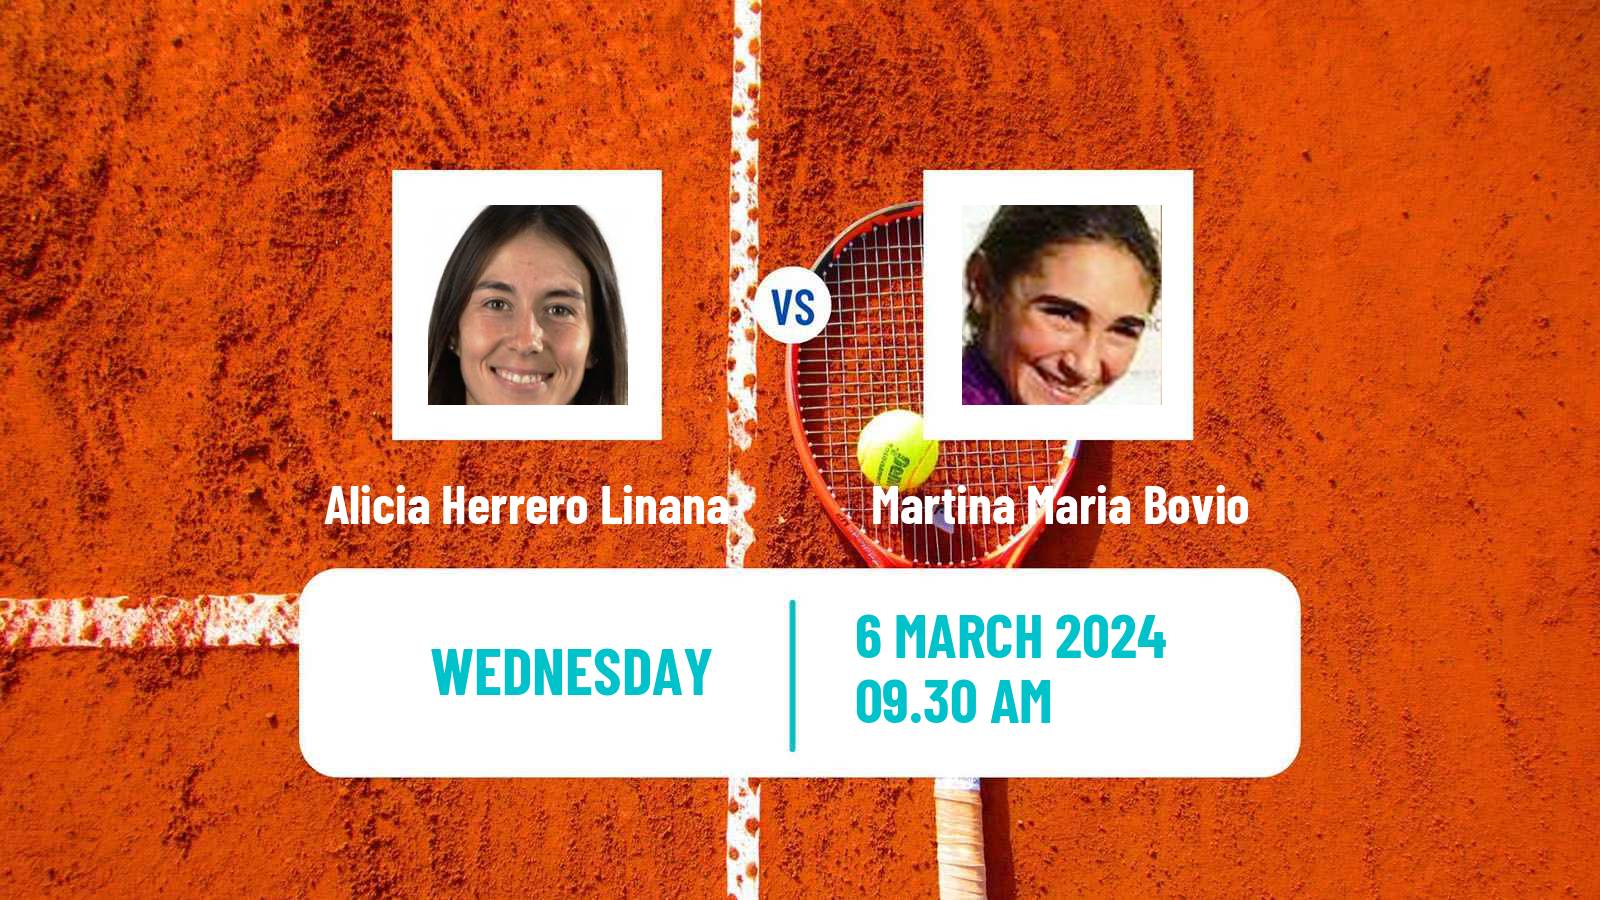 Tennis ITF W15 Cordoba Women Alicia Herrero Linana - Martina Maria Bovio